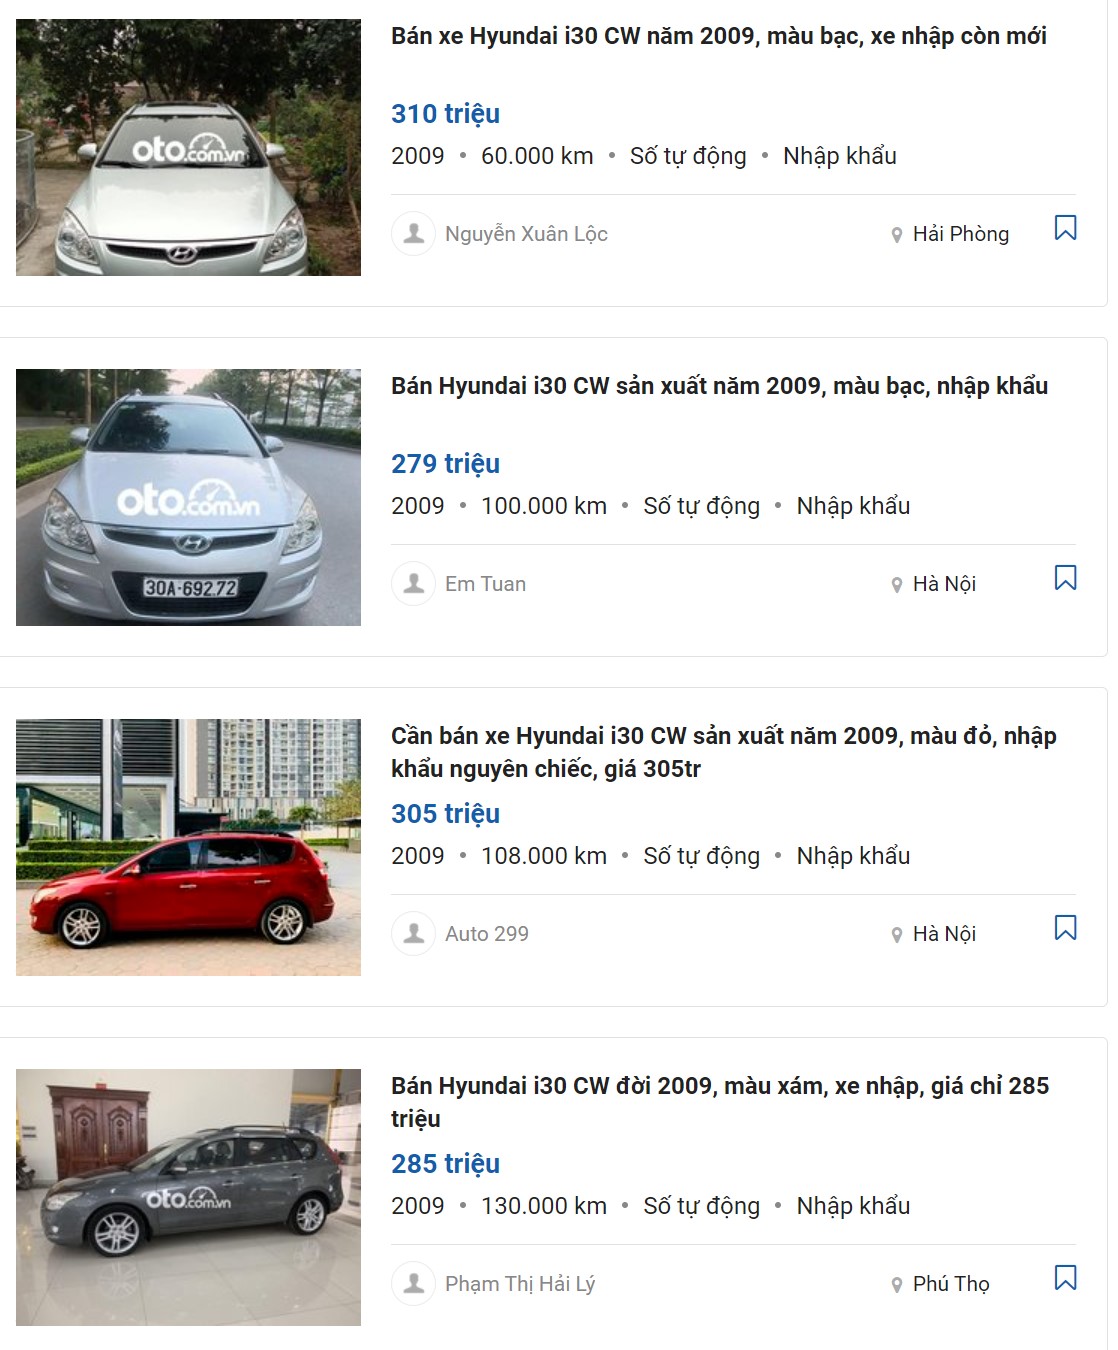 Đánh giá Hyundai i30 CW 2009